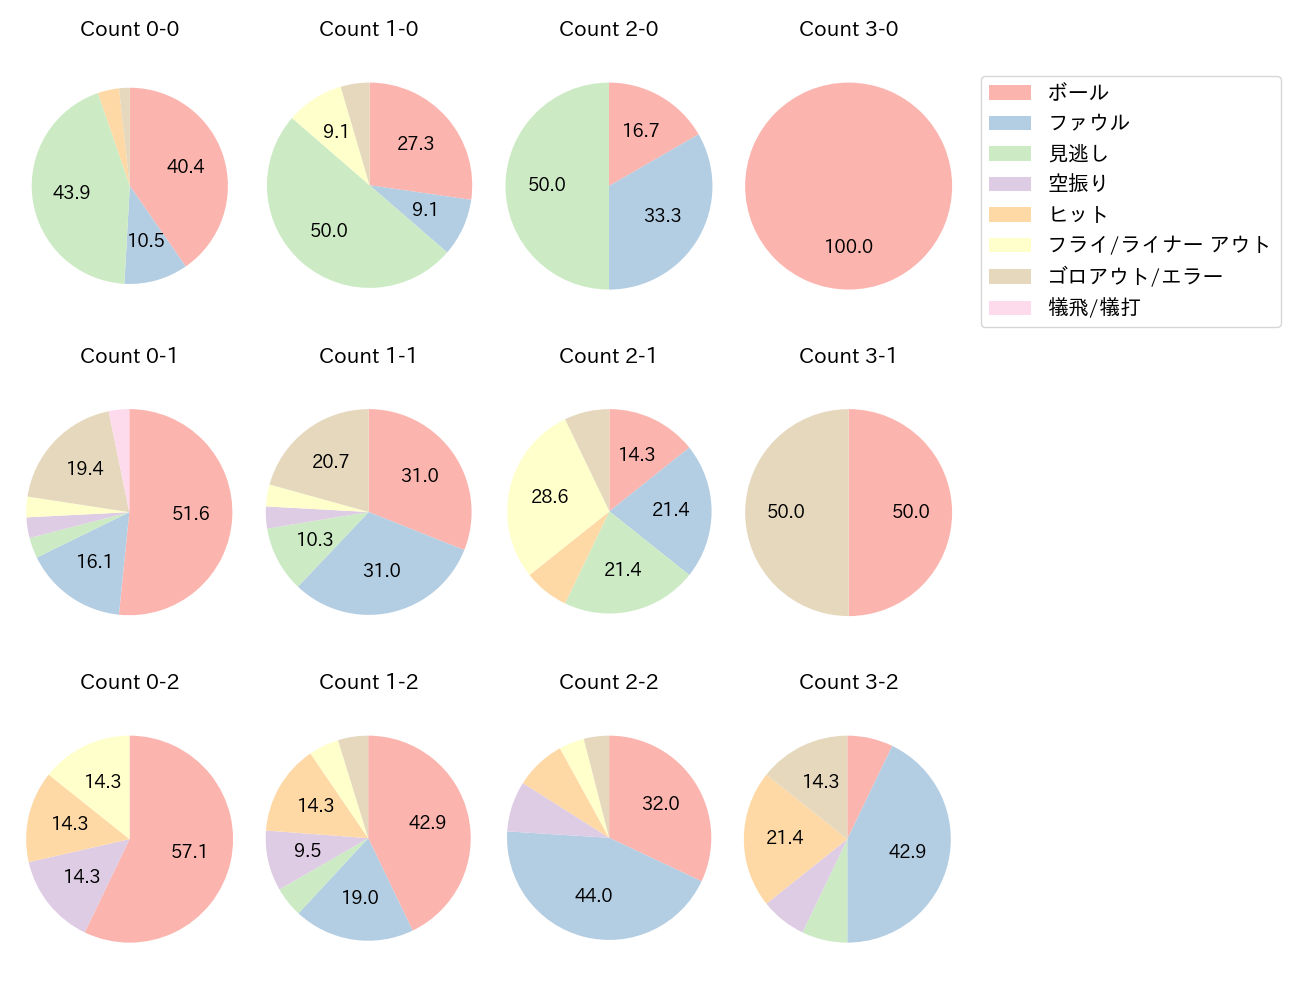 福田 周平の球数分布(2021年8月)